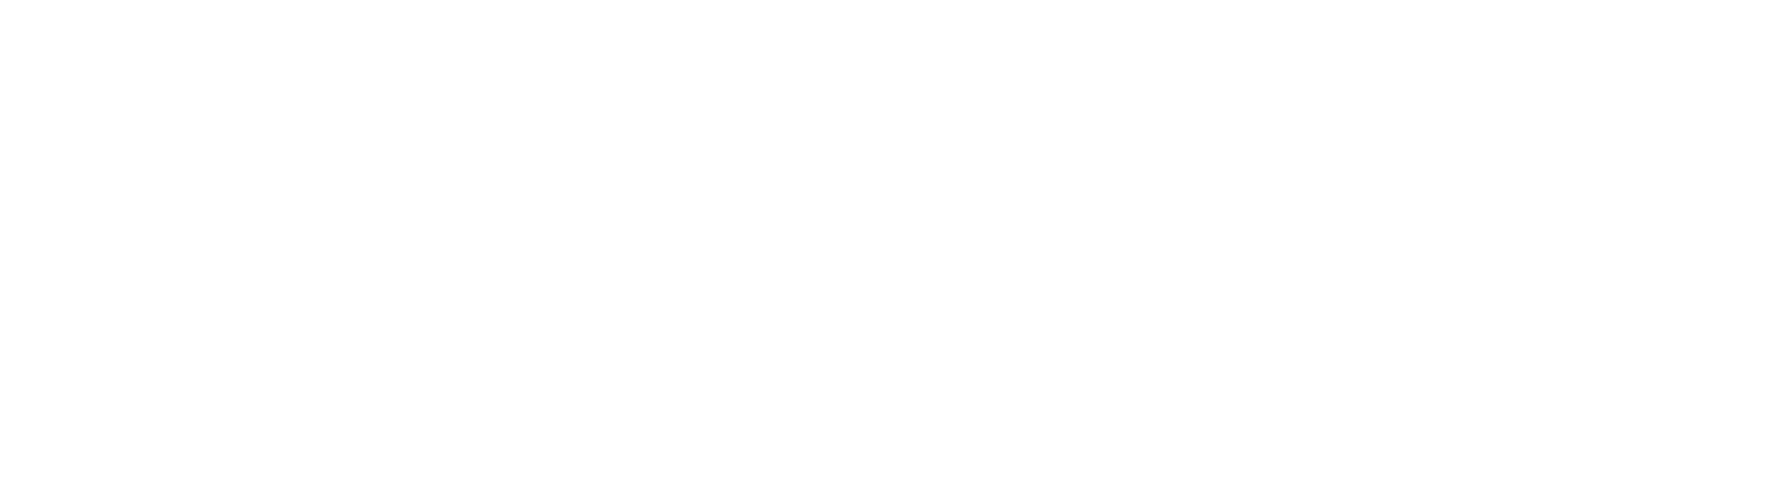 Circa Sports Logo